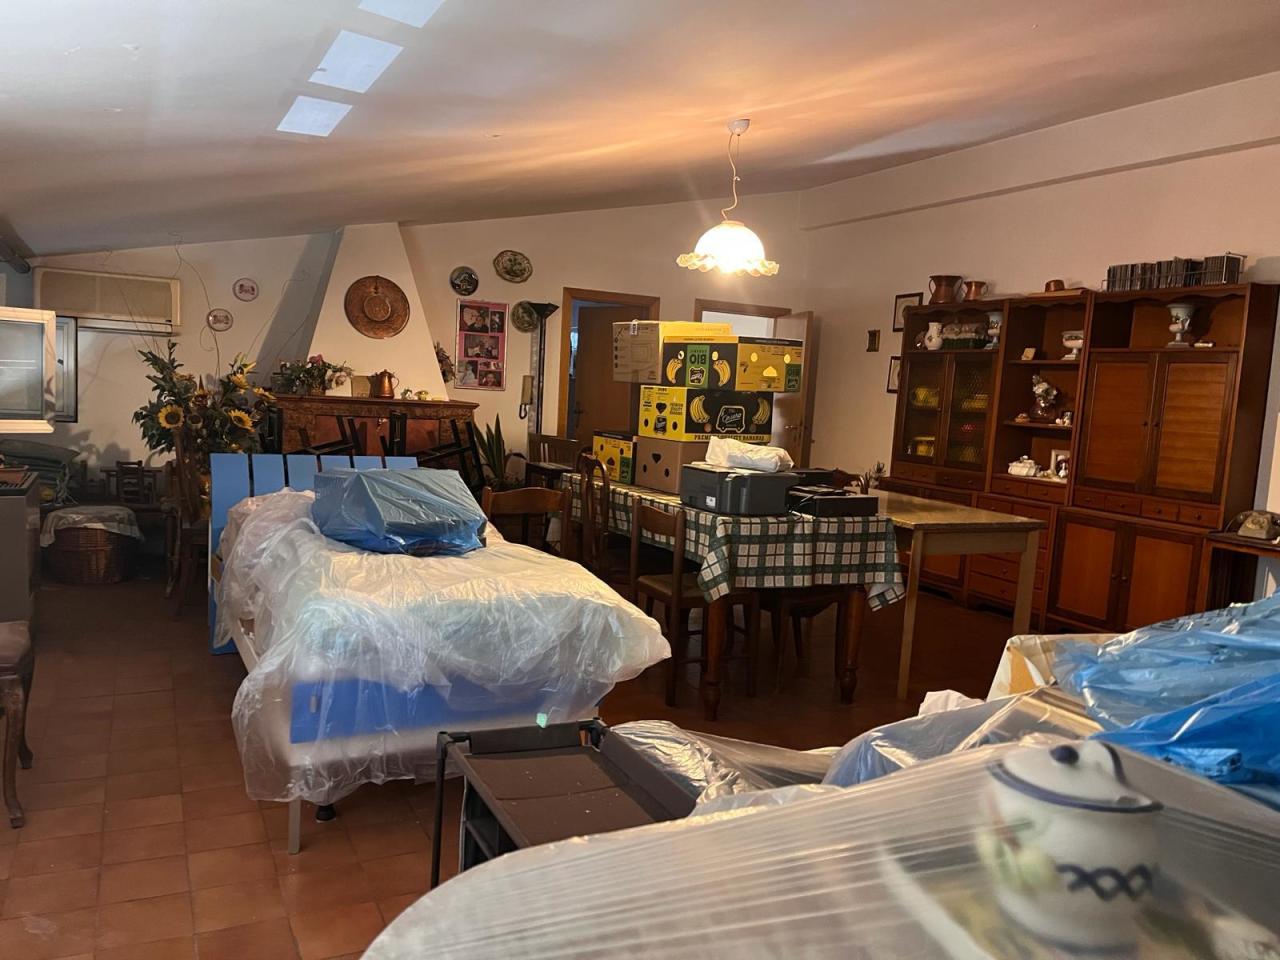 Attico / Mansarda in vendita a Castel di Lama, 2 locali, prezzo € 45.000 | PortaleAgenzieImmobiliari.it